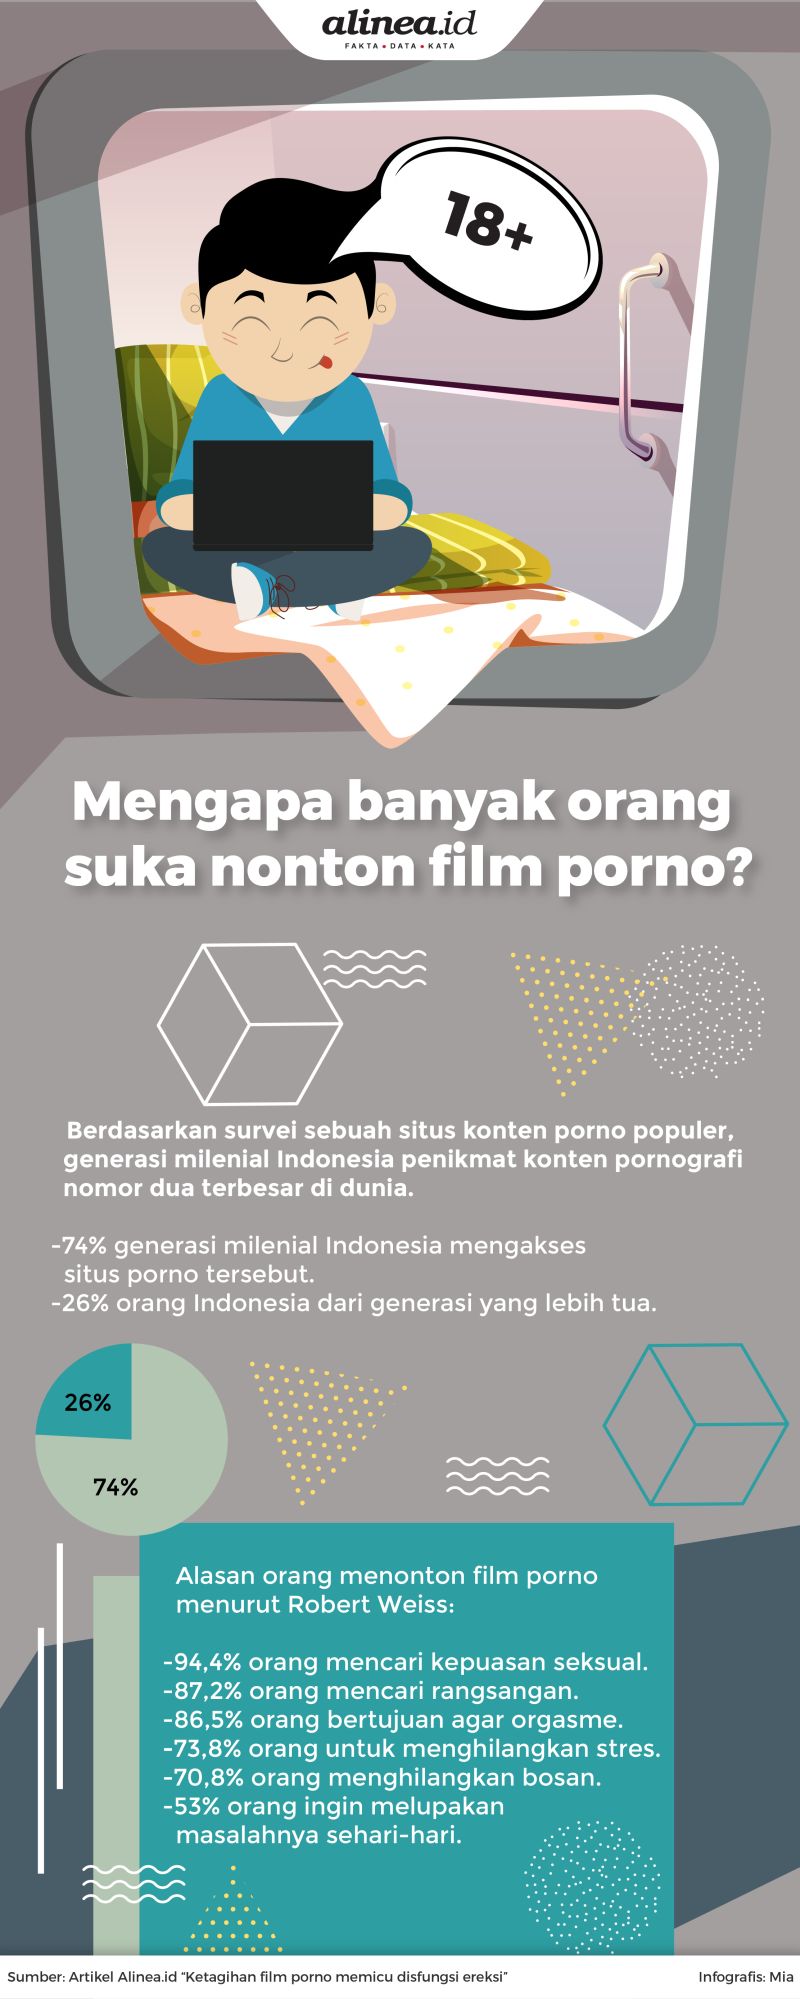 Generasi milenial Indonesia masuk dalam generasi yang paling banyak mengakses konten pornografi.